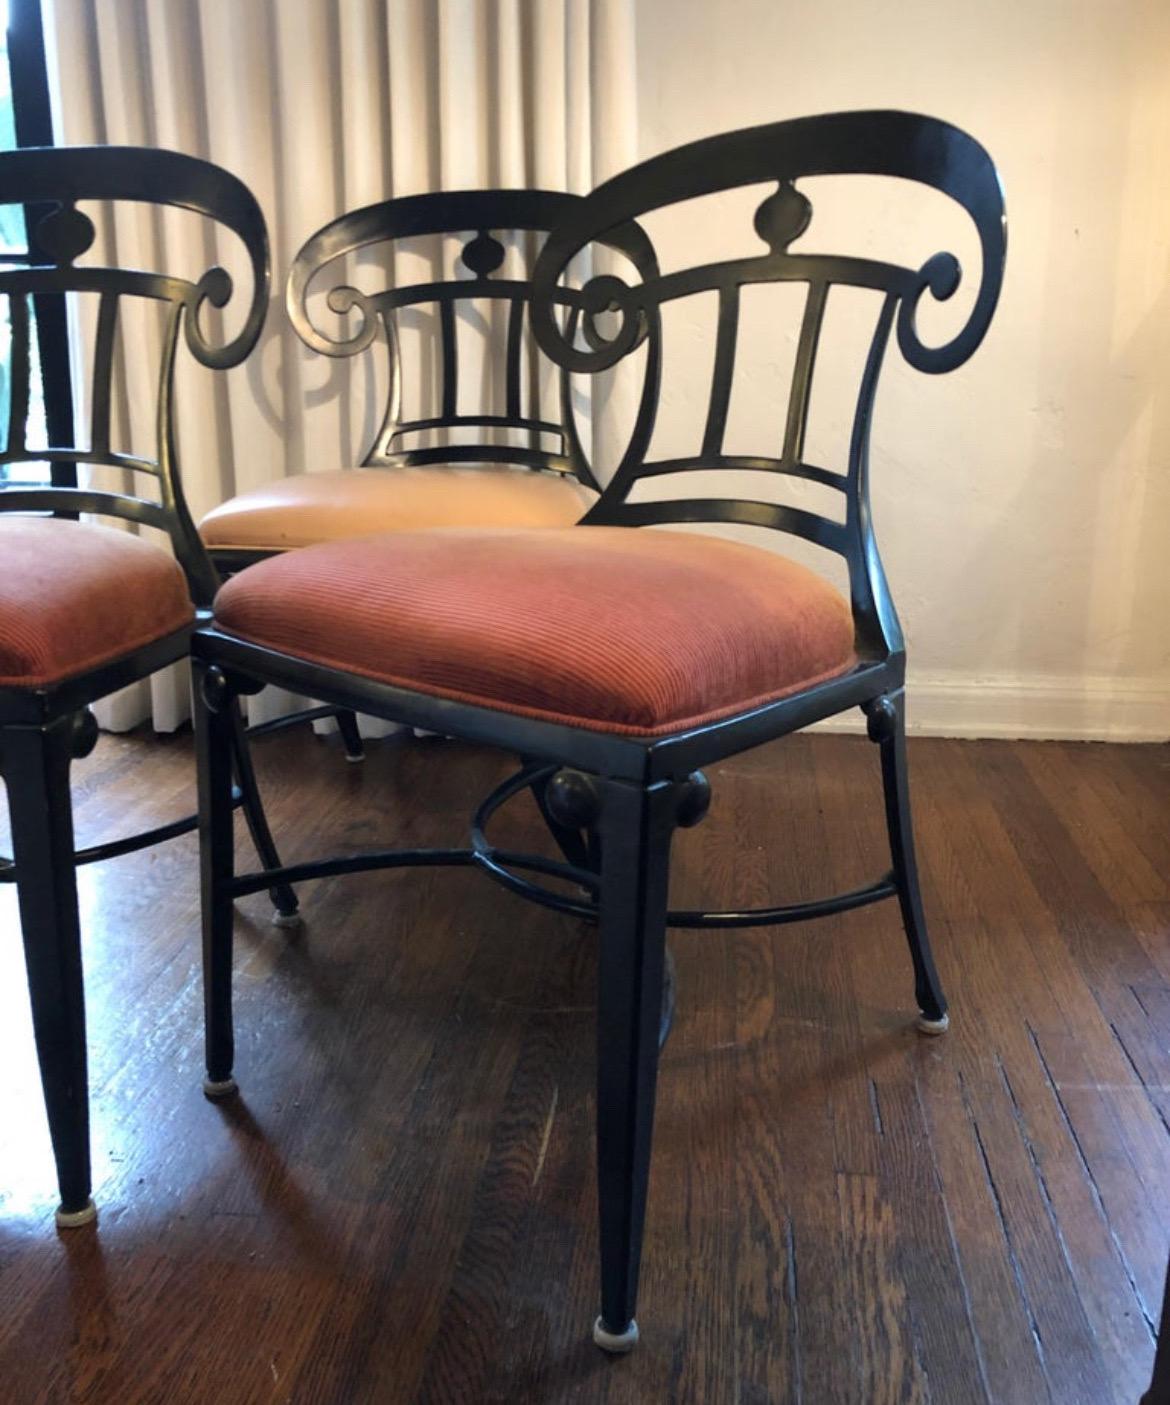 Satz von 3 Vintage MCM Veneman Esszimmerstühlen für drinnen und draußen.
Mid-Century Modern im mediterranen Stil mit Scroll-Design.

2 Stühle sind mit gedämpftem, feuerrotem Stoff und 1 mit hellbraunem Leder bezogen.